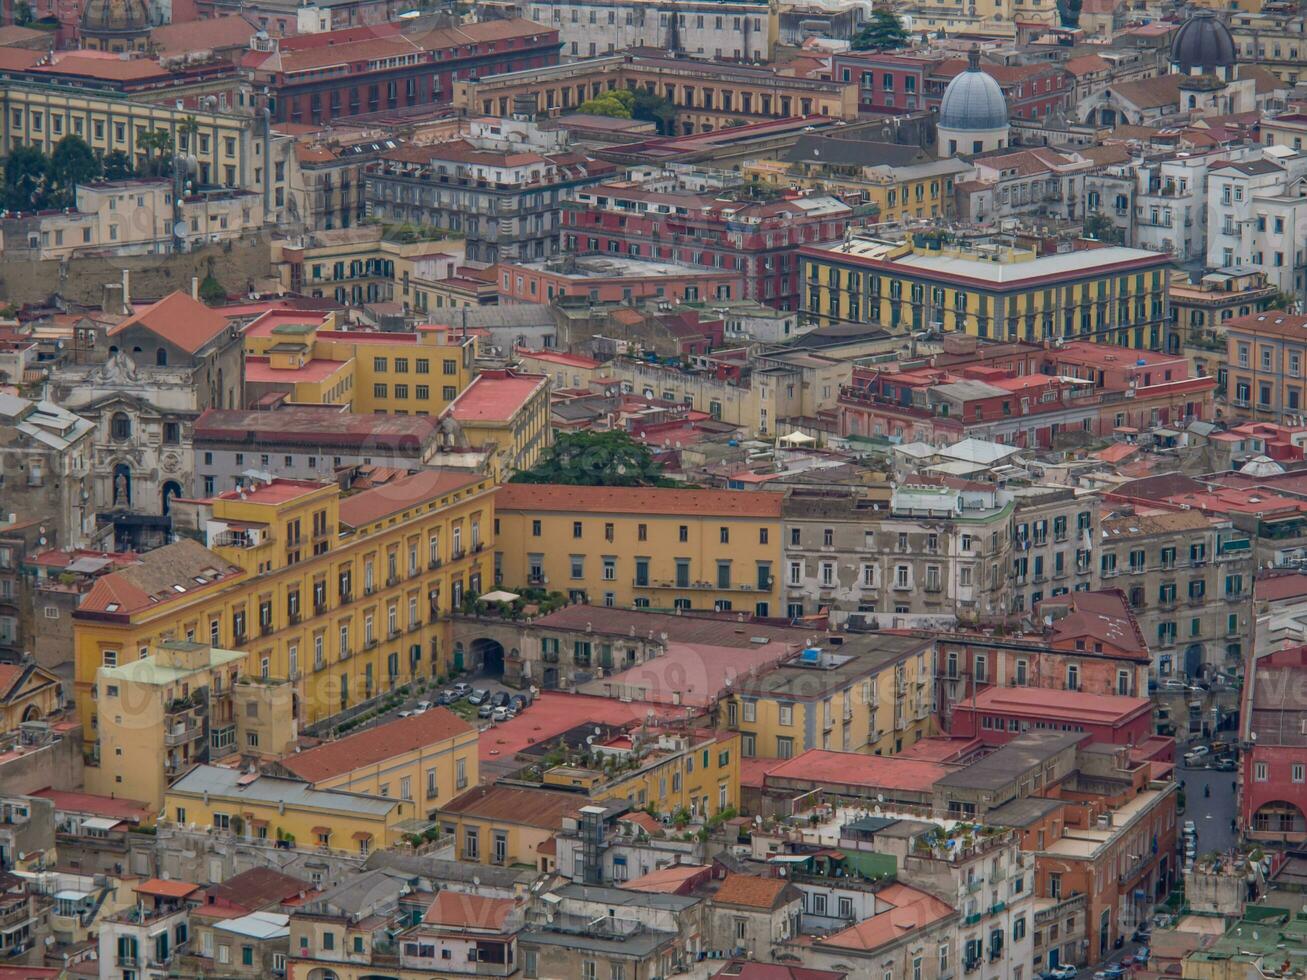 il città di Napoli nel Italia foto